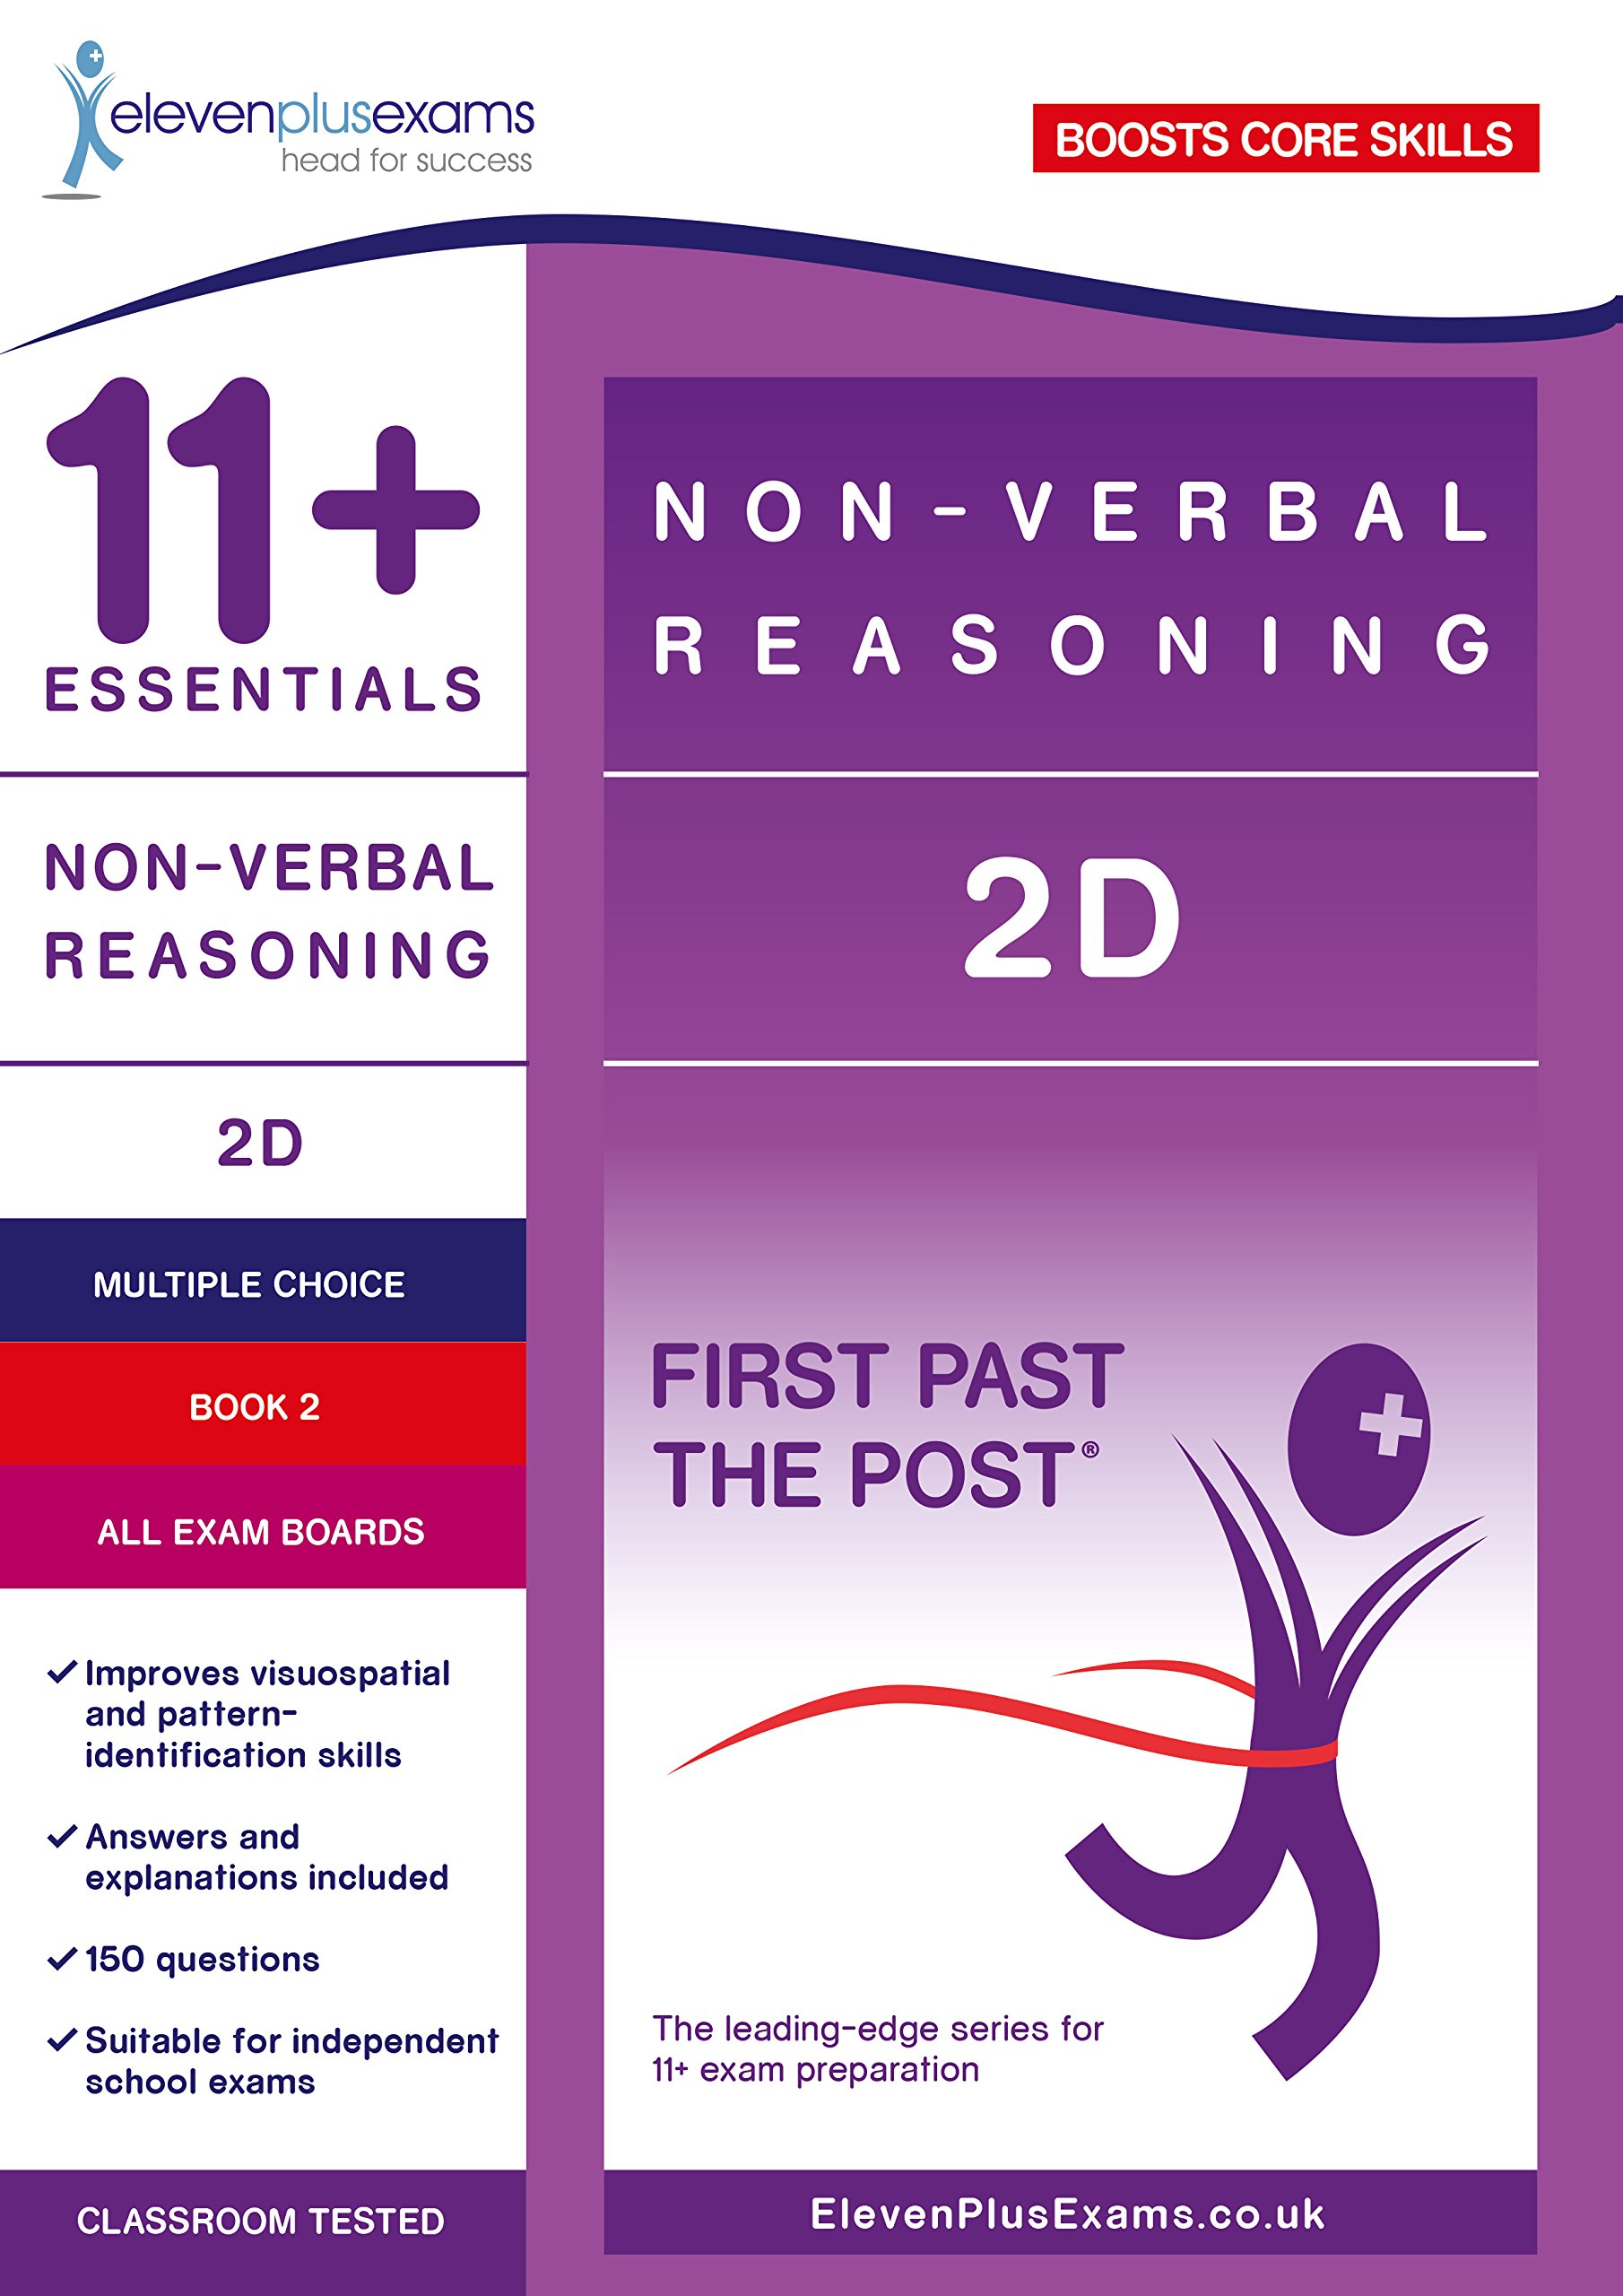 11+ Essentials Non-Verbal Resoning 2D | ELEVEN PLUS EXAMS